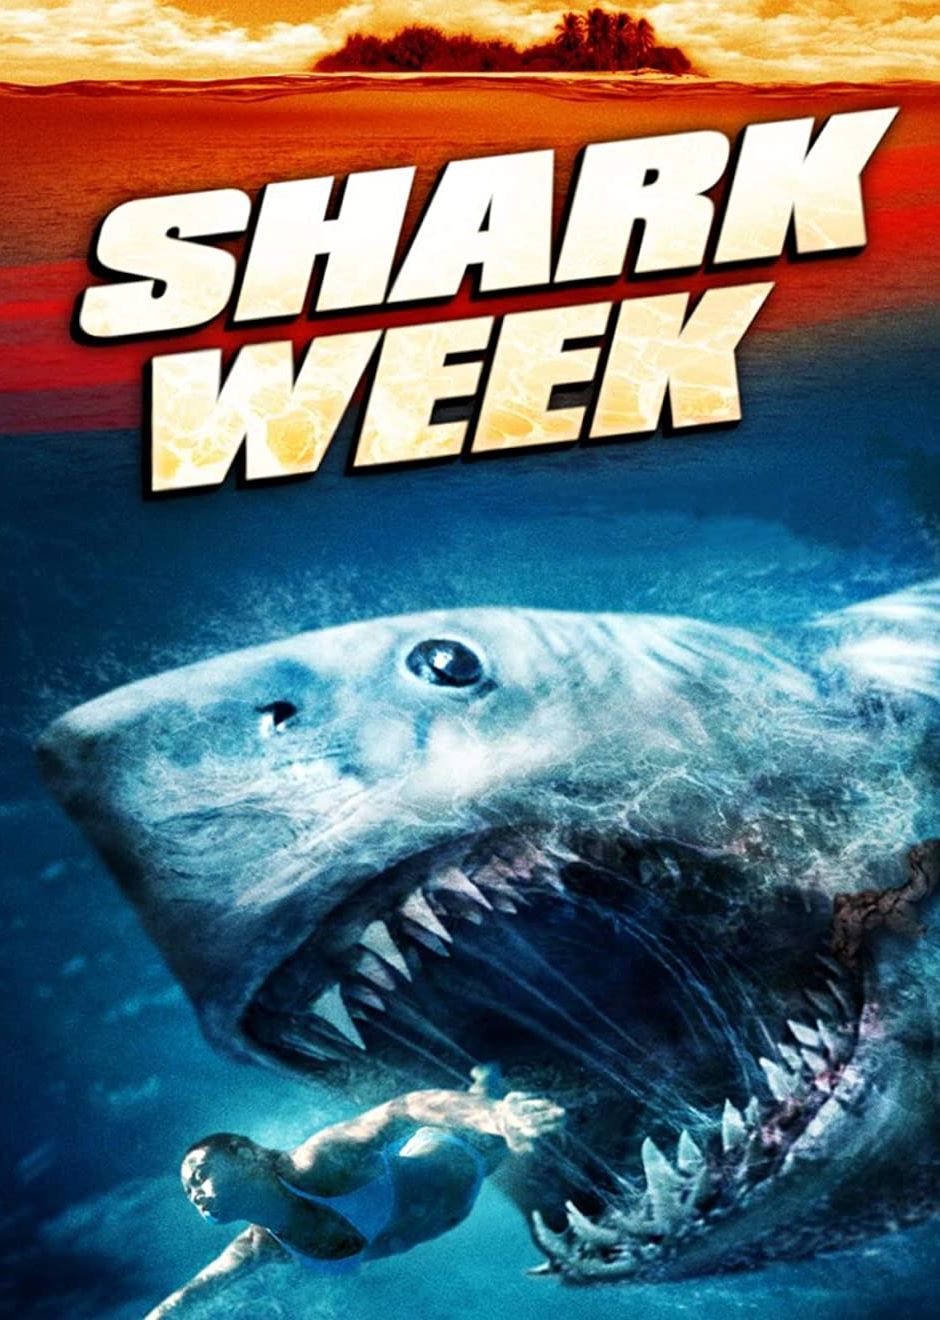 Shark Week [HD] (2012)